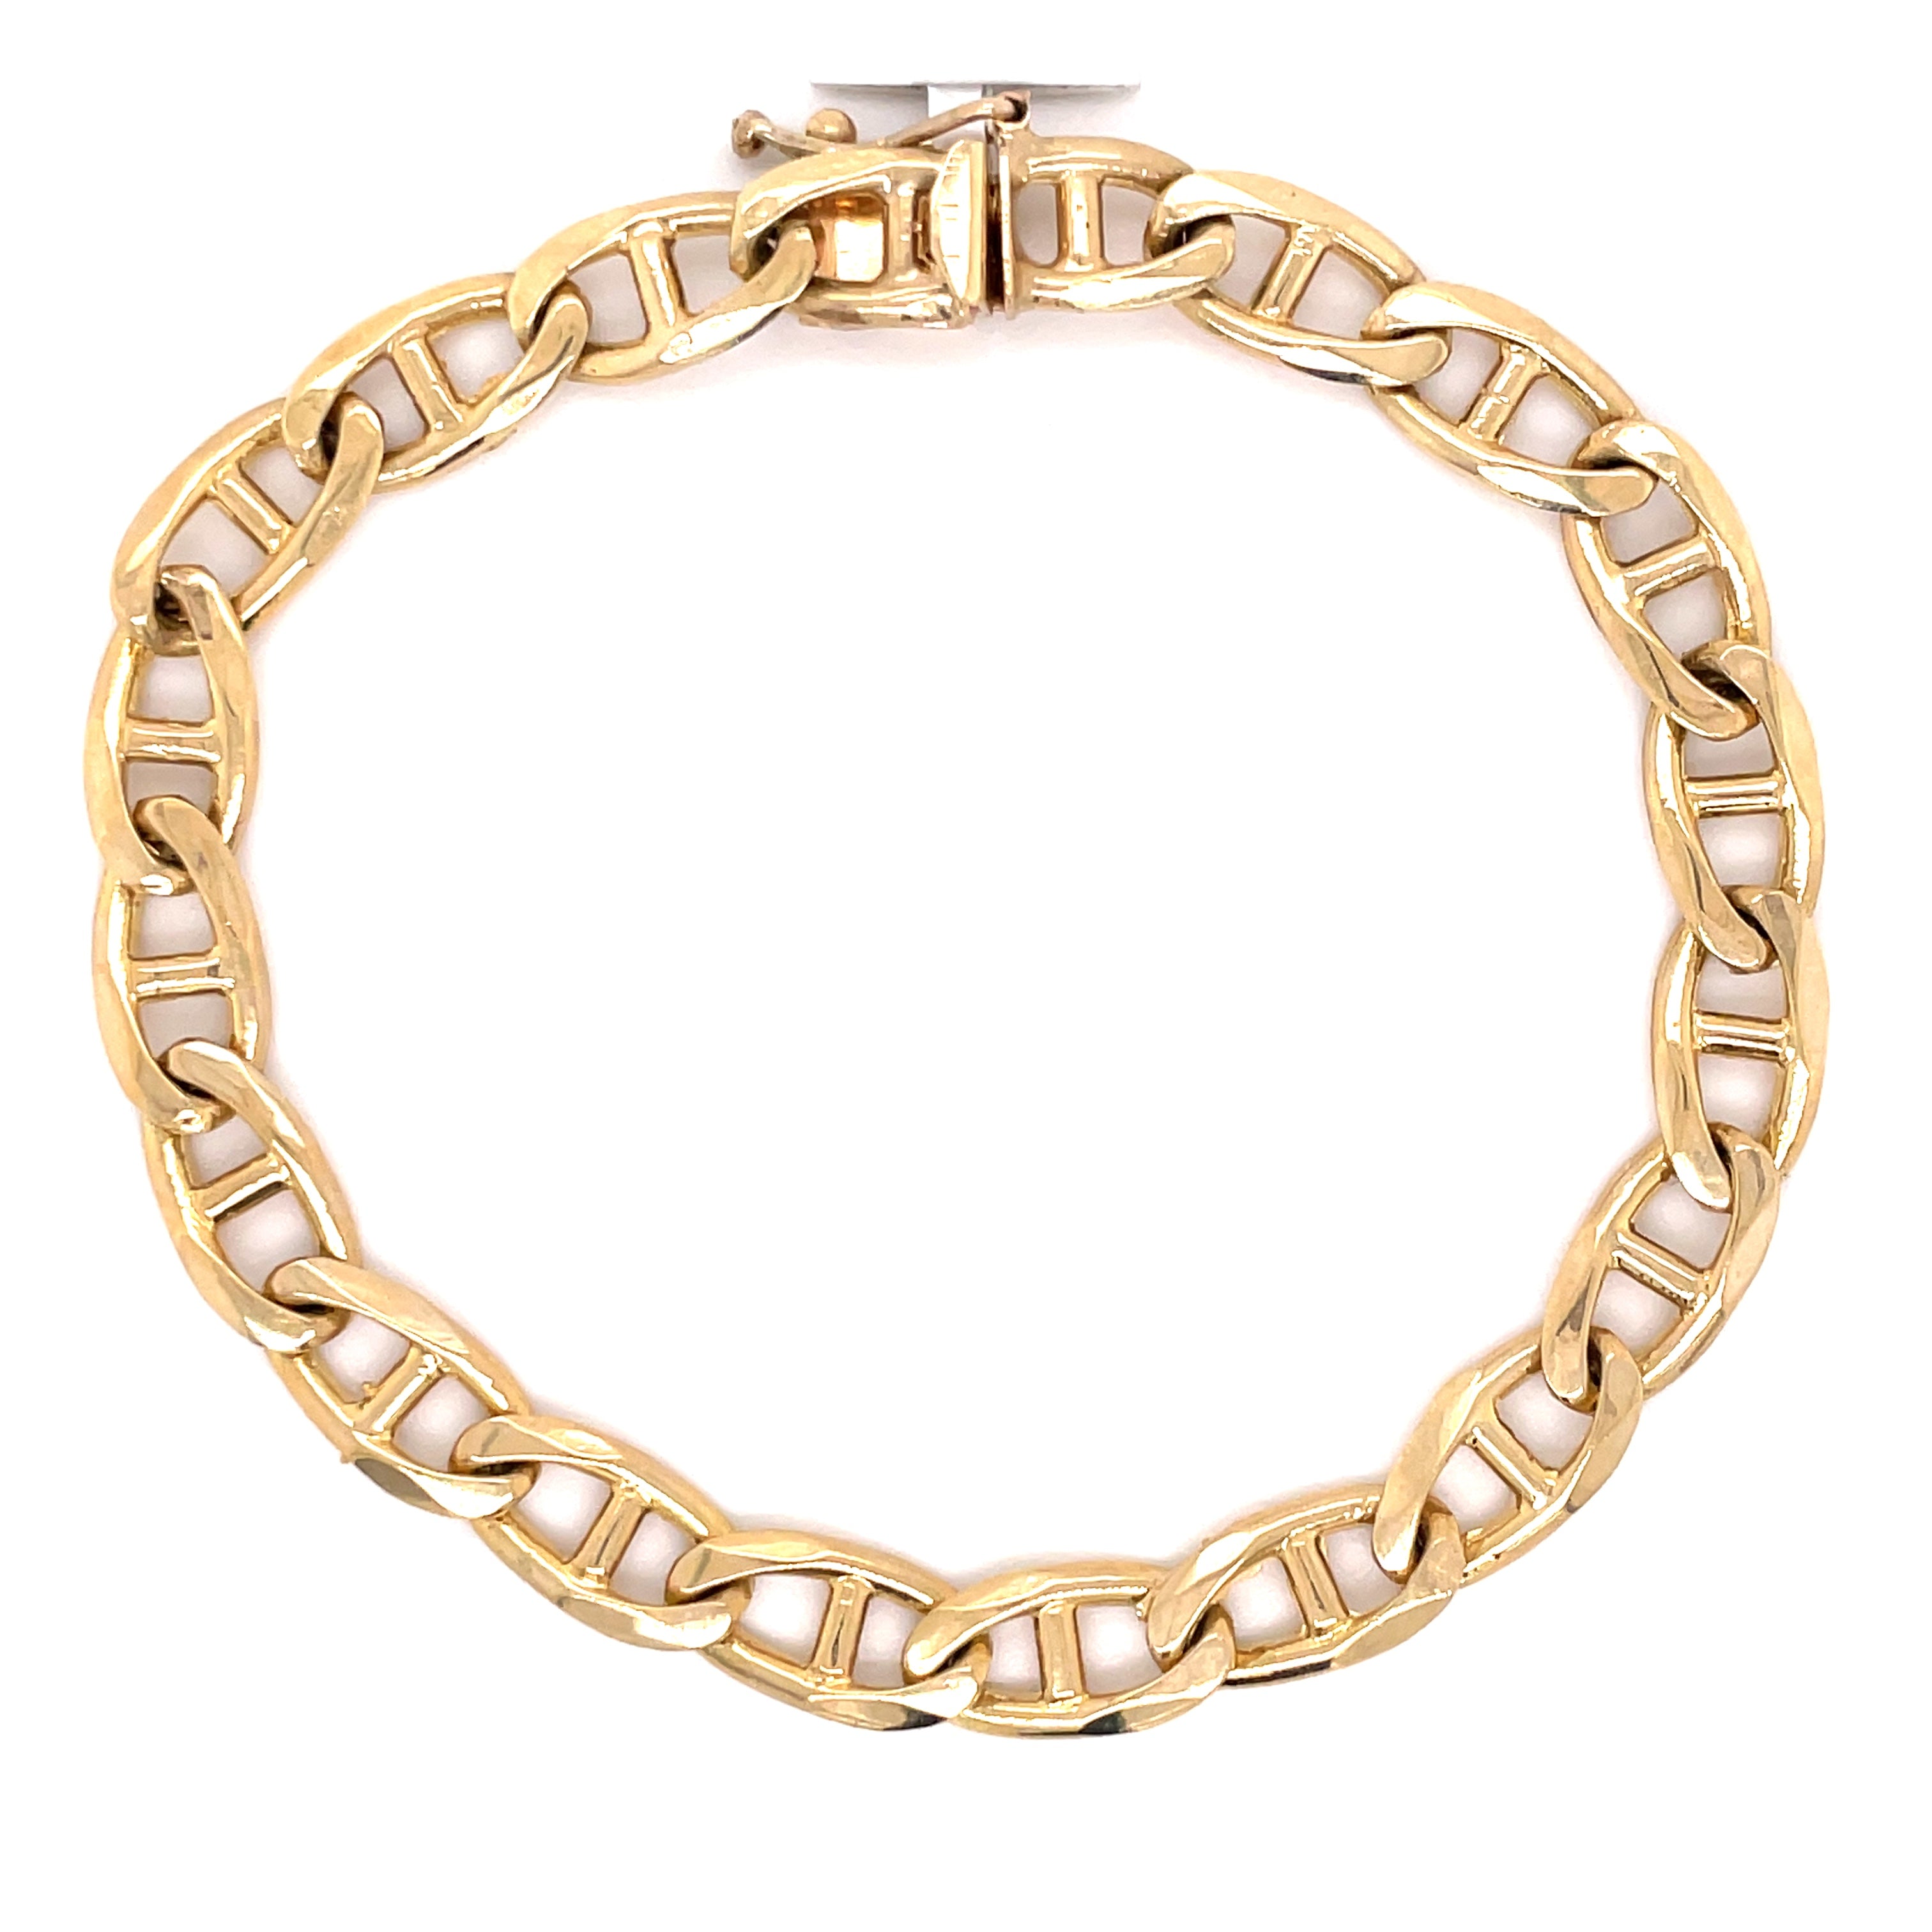 10K Gold Mariner Link Bracelet (Regular)-8.0MM - White Carat - USA & Canada